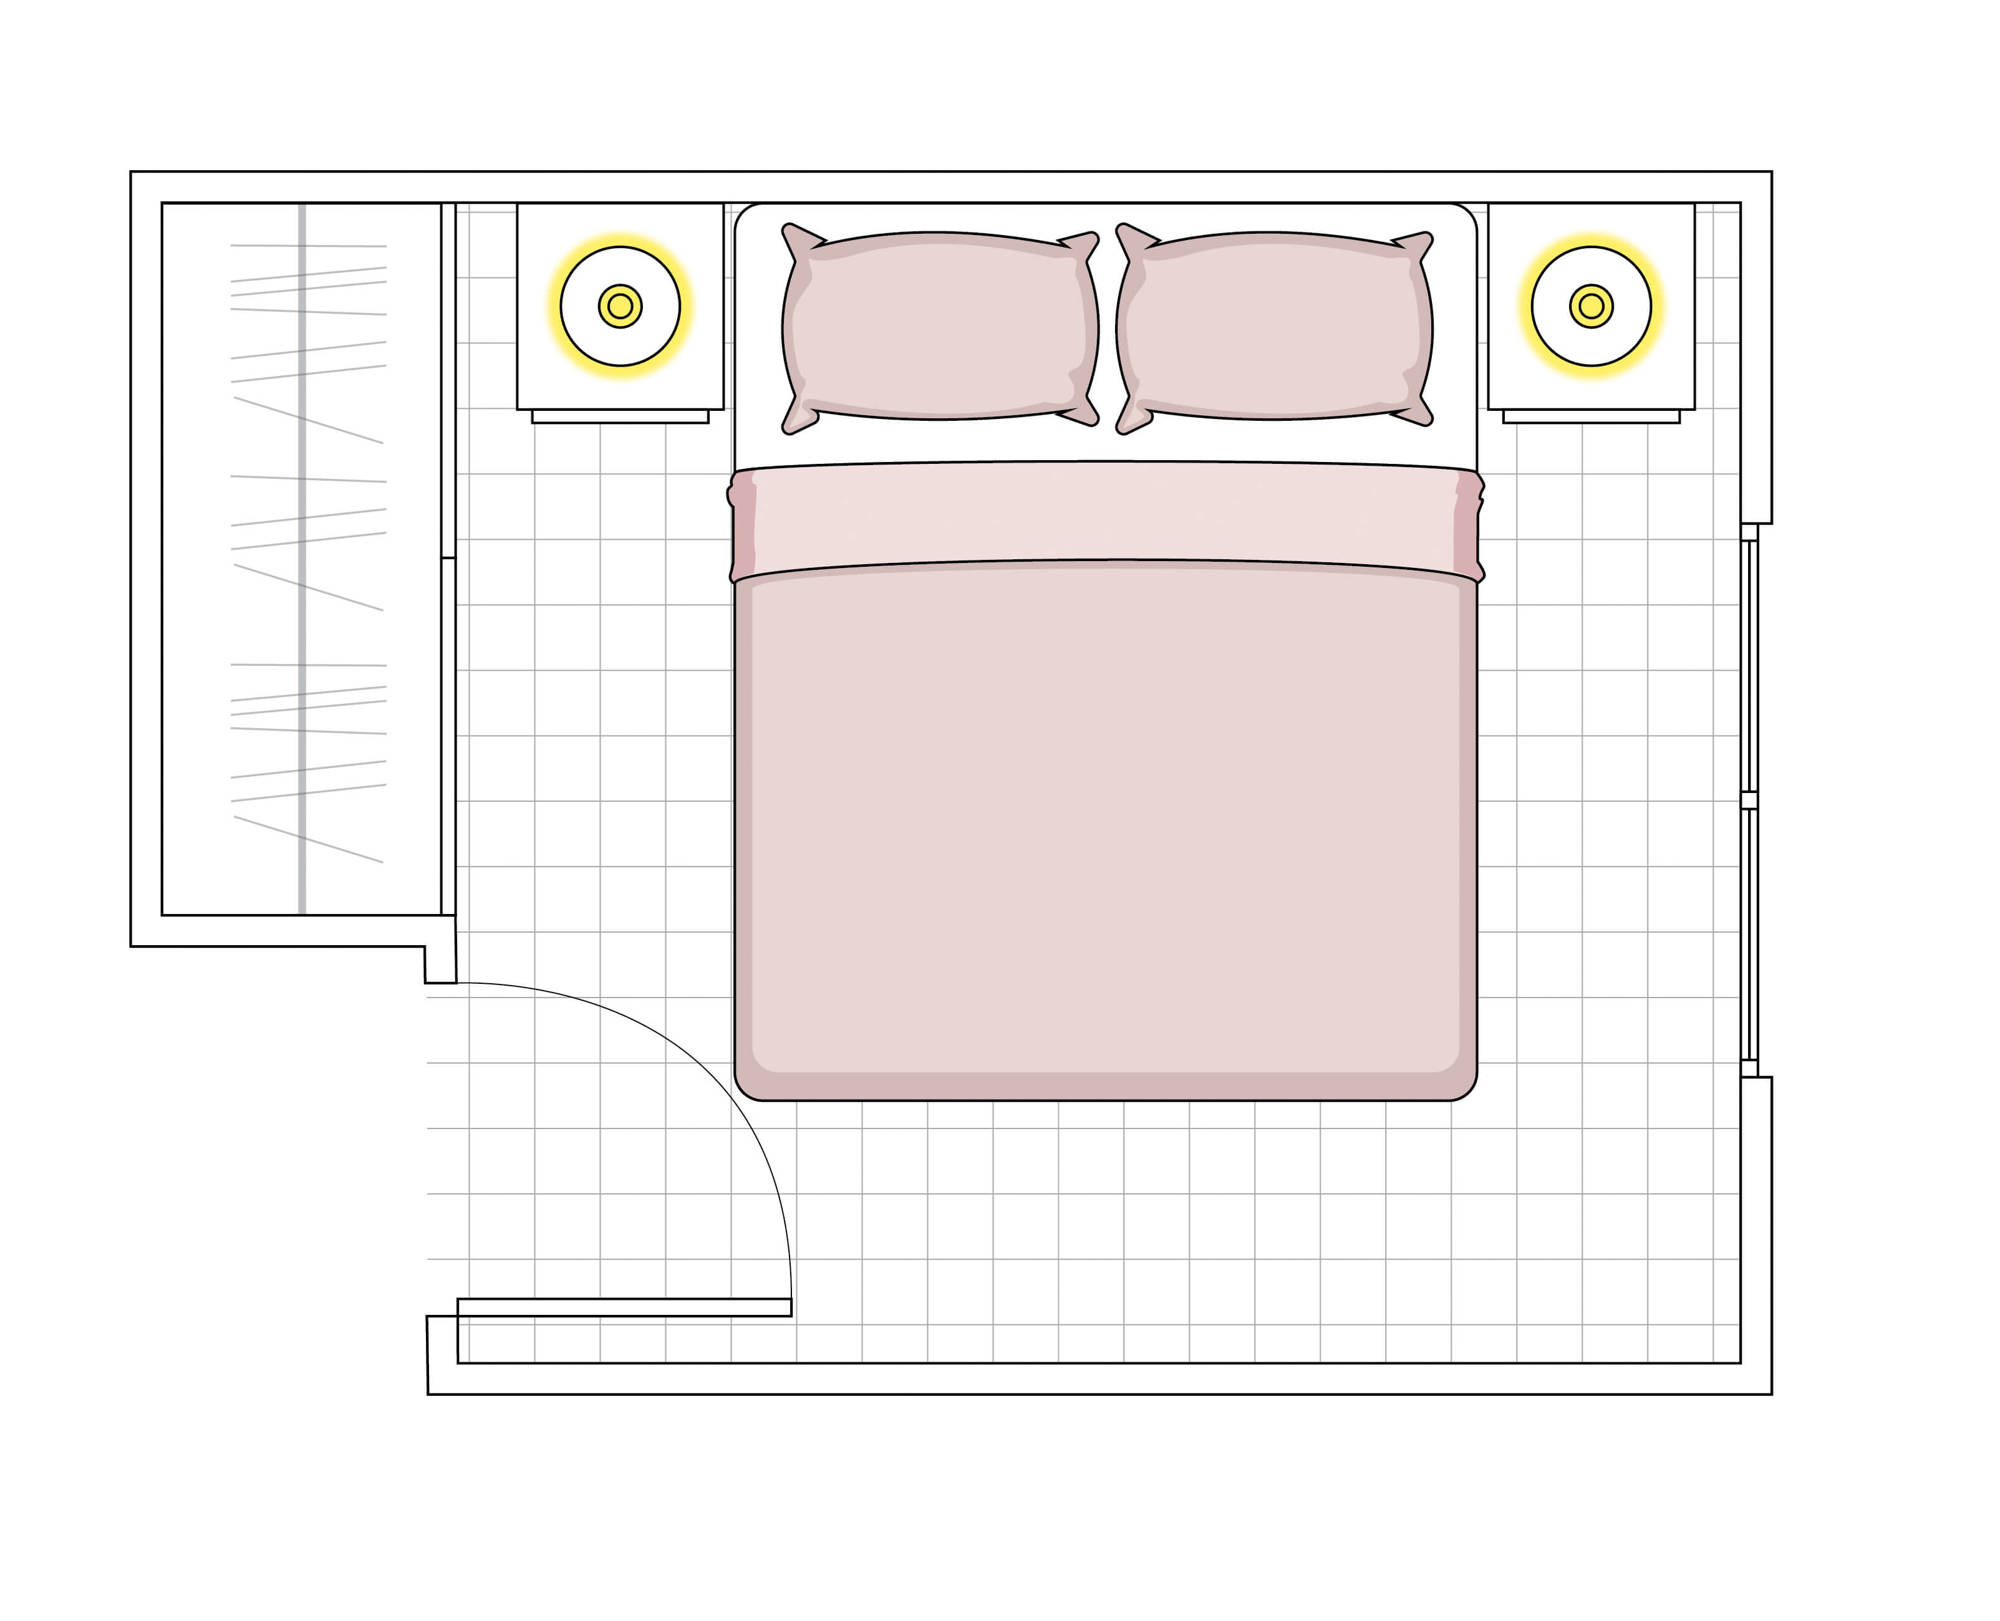 00520114 plano dormitorio menos de 10 m2